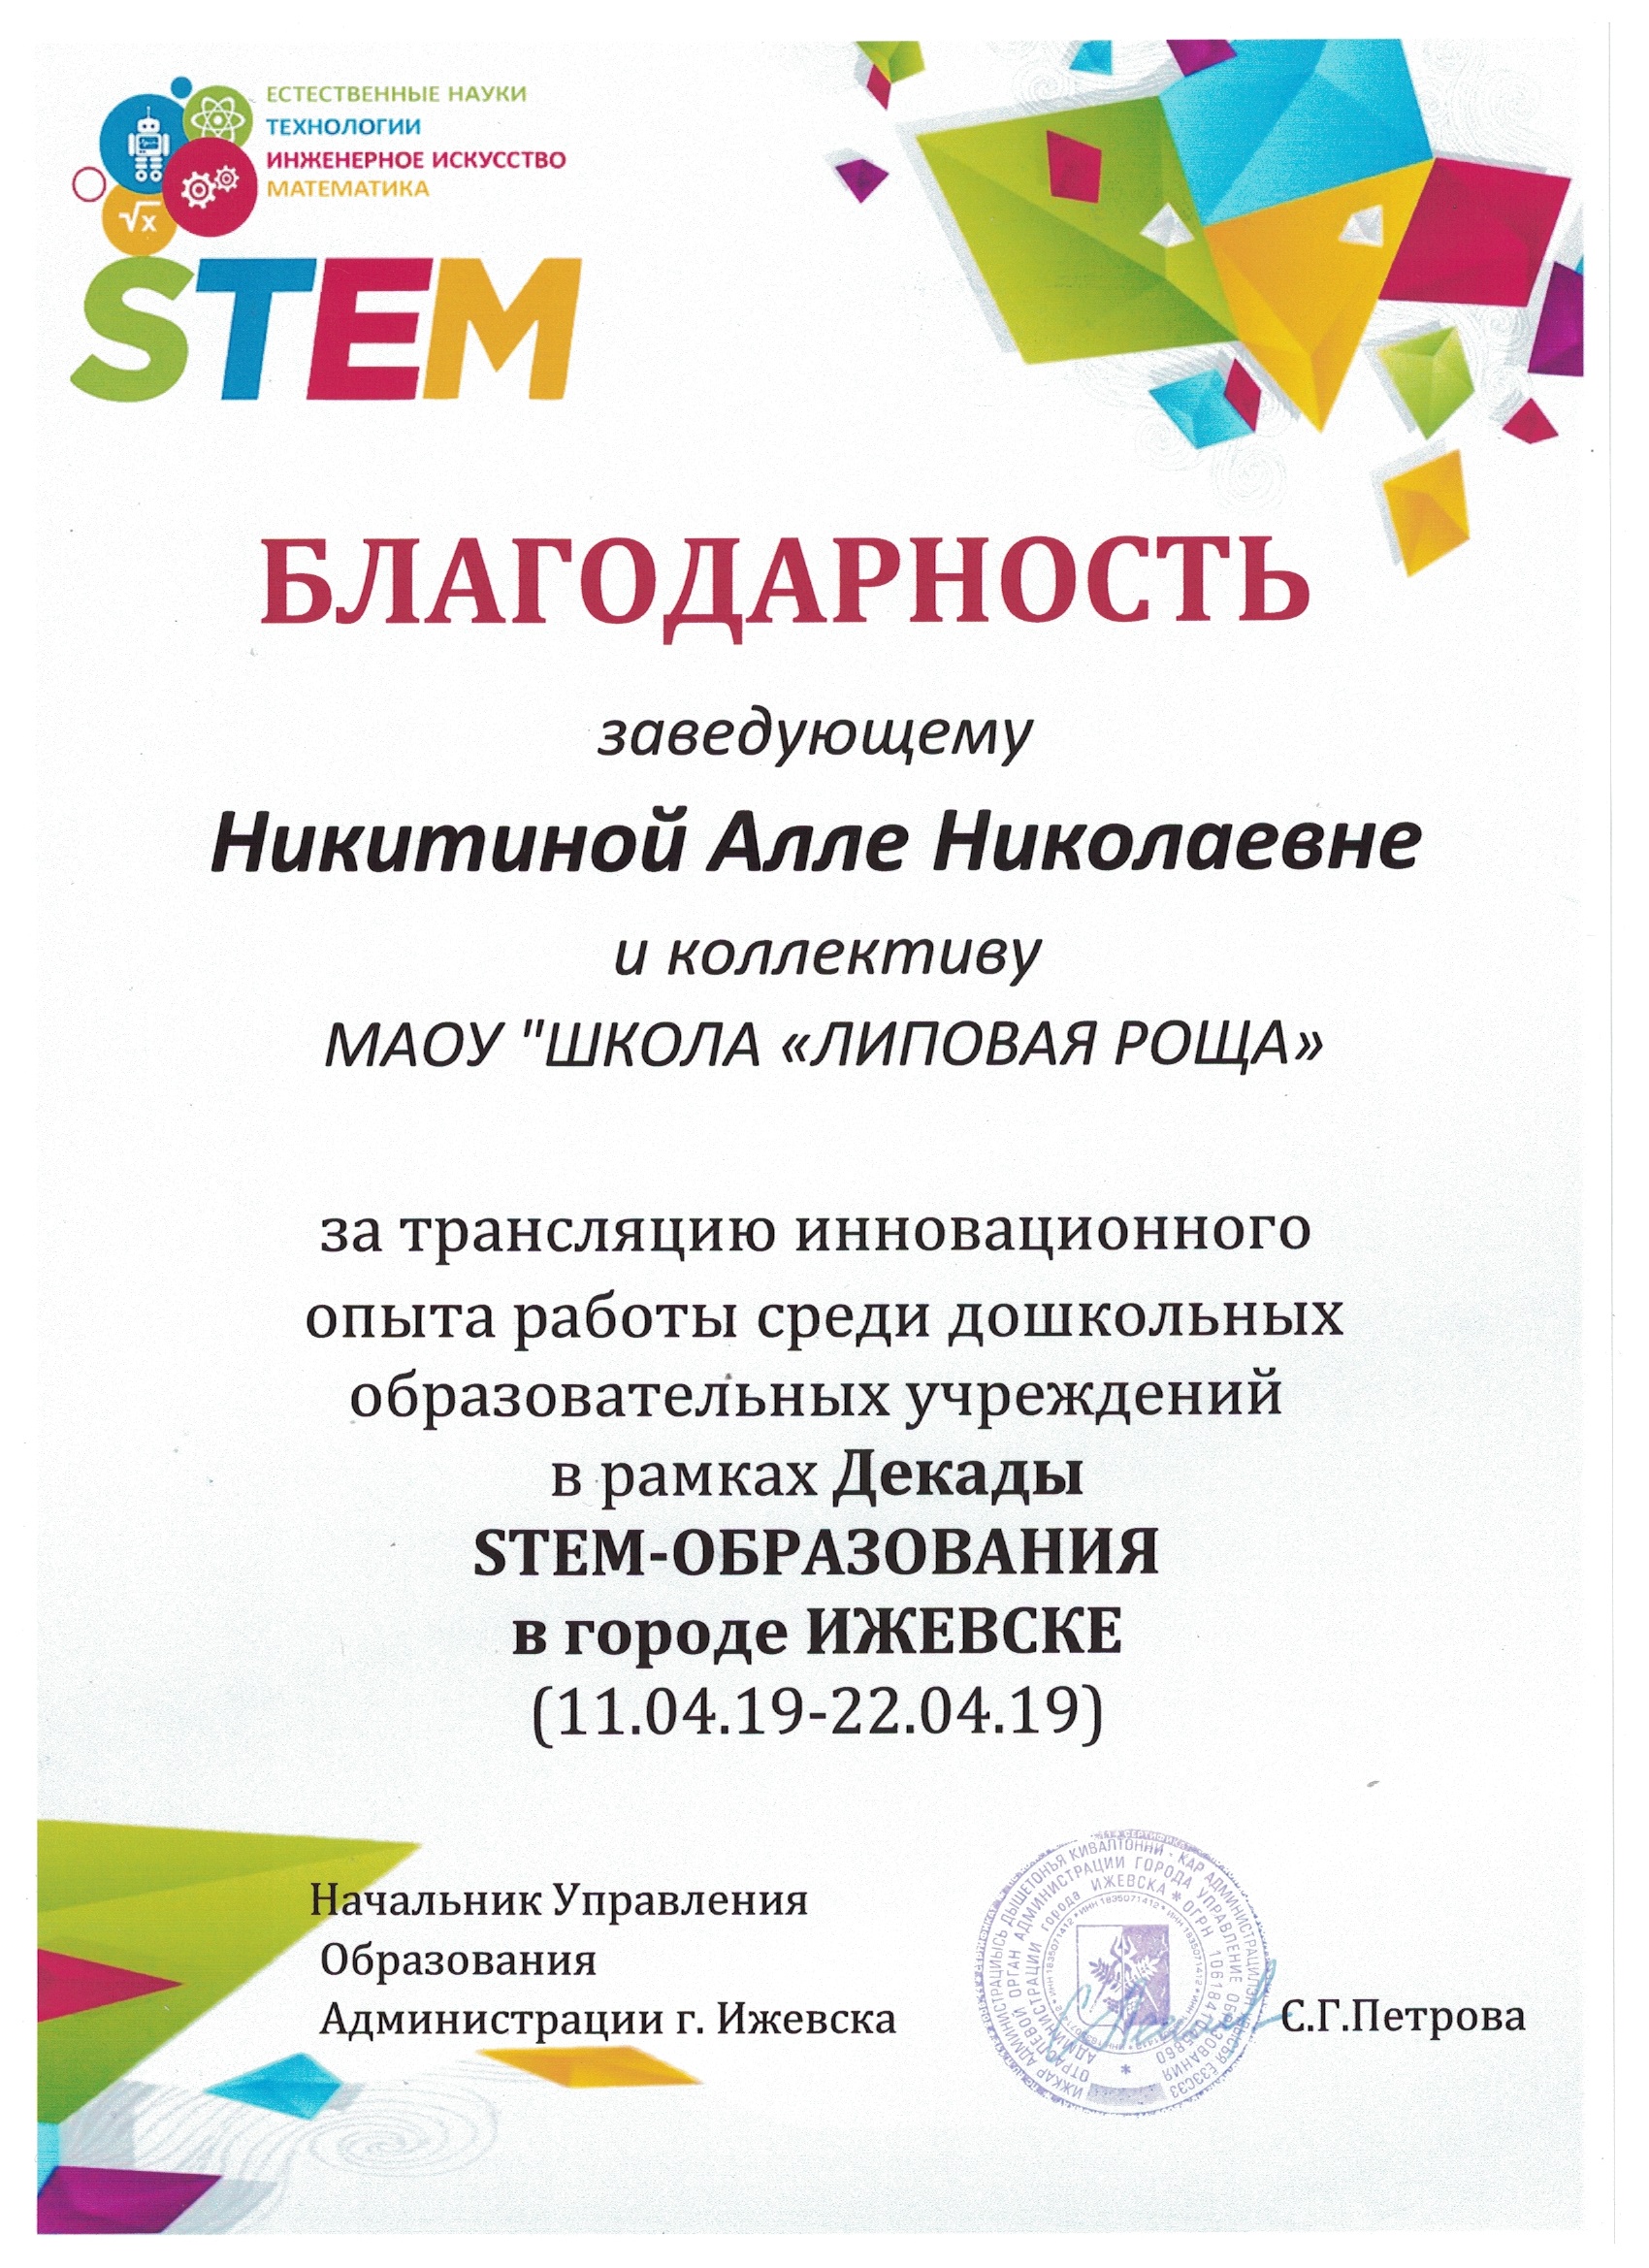 Участник Декады STEM-образования в городе Ижевске